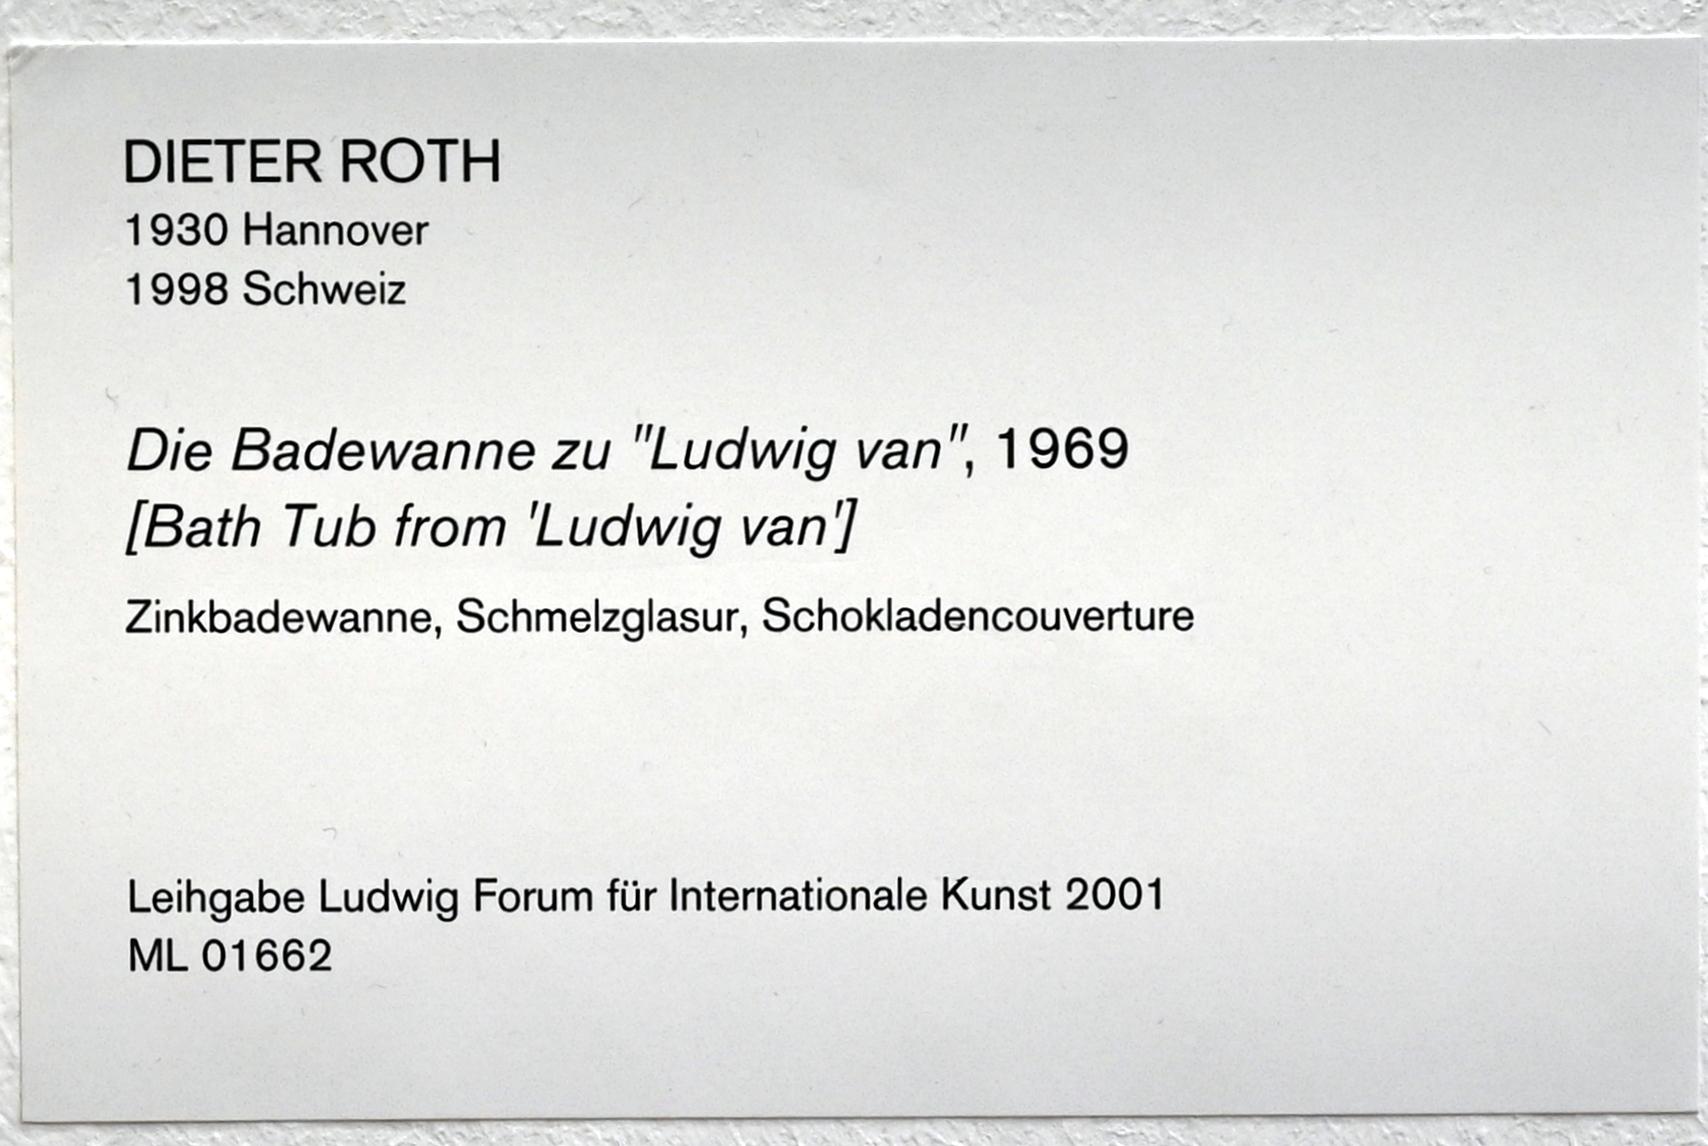 Dieter Roth (1965–1993), Die Badewanne zu "Ludwig van", Köln, Museum Ludwig, 01.19, 1969, Bild 5/5